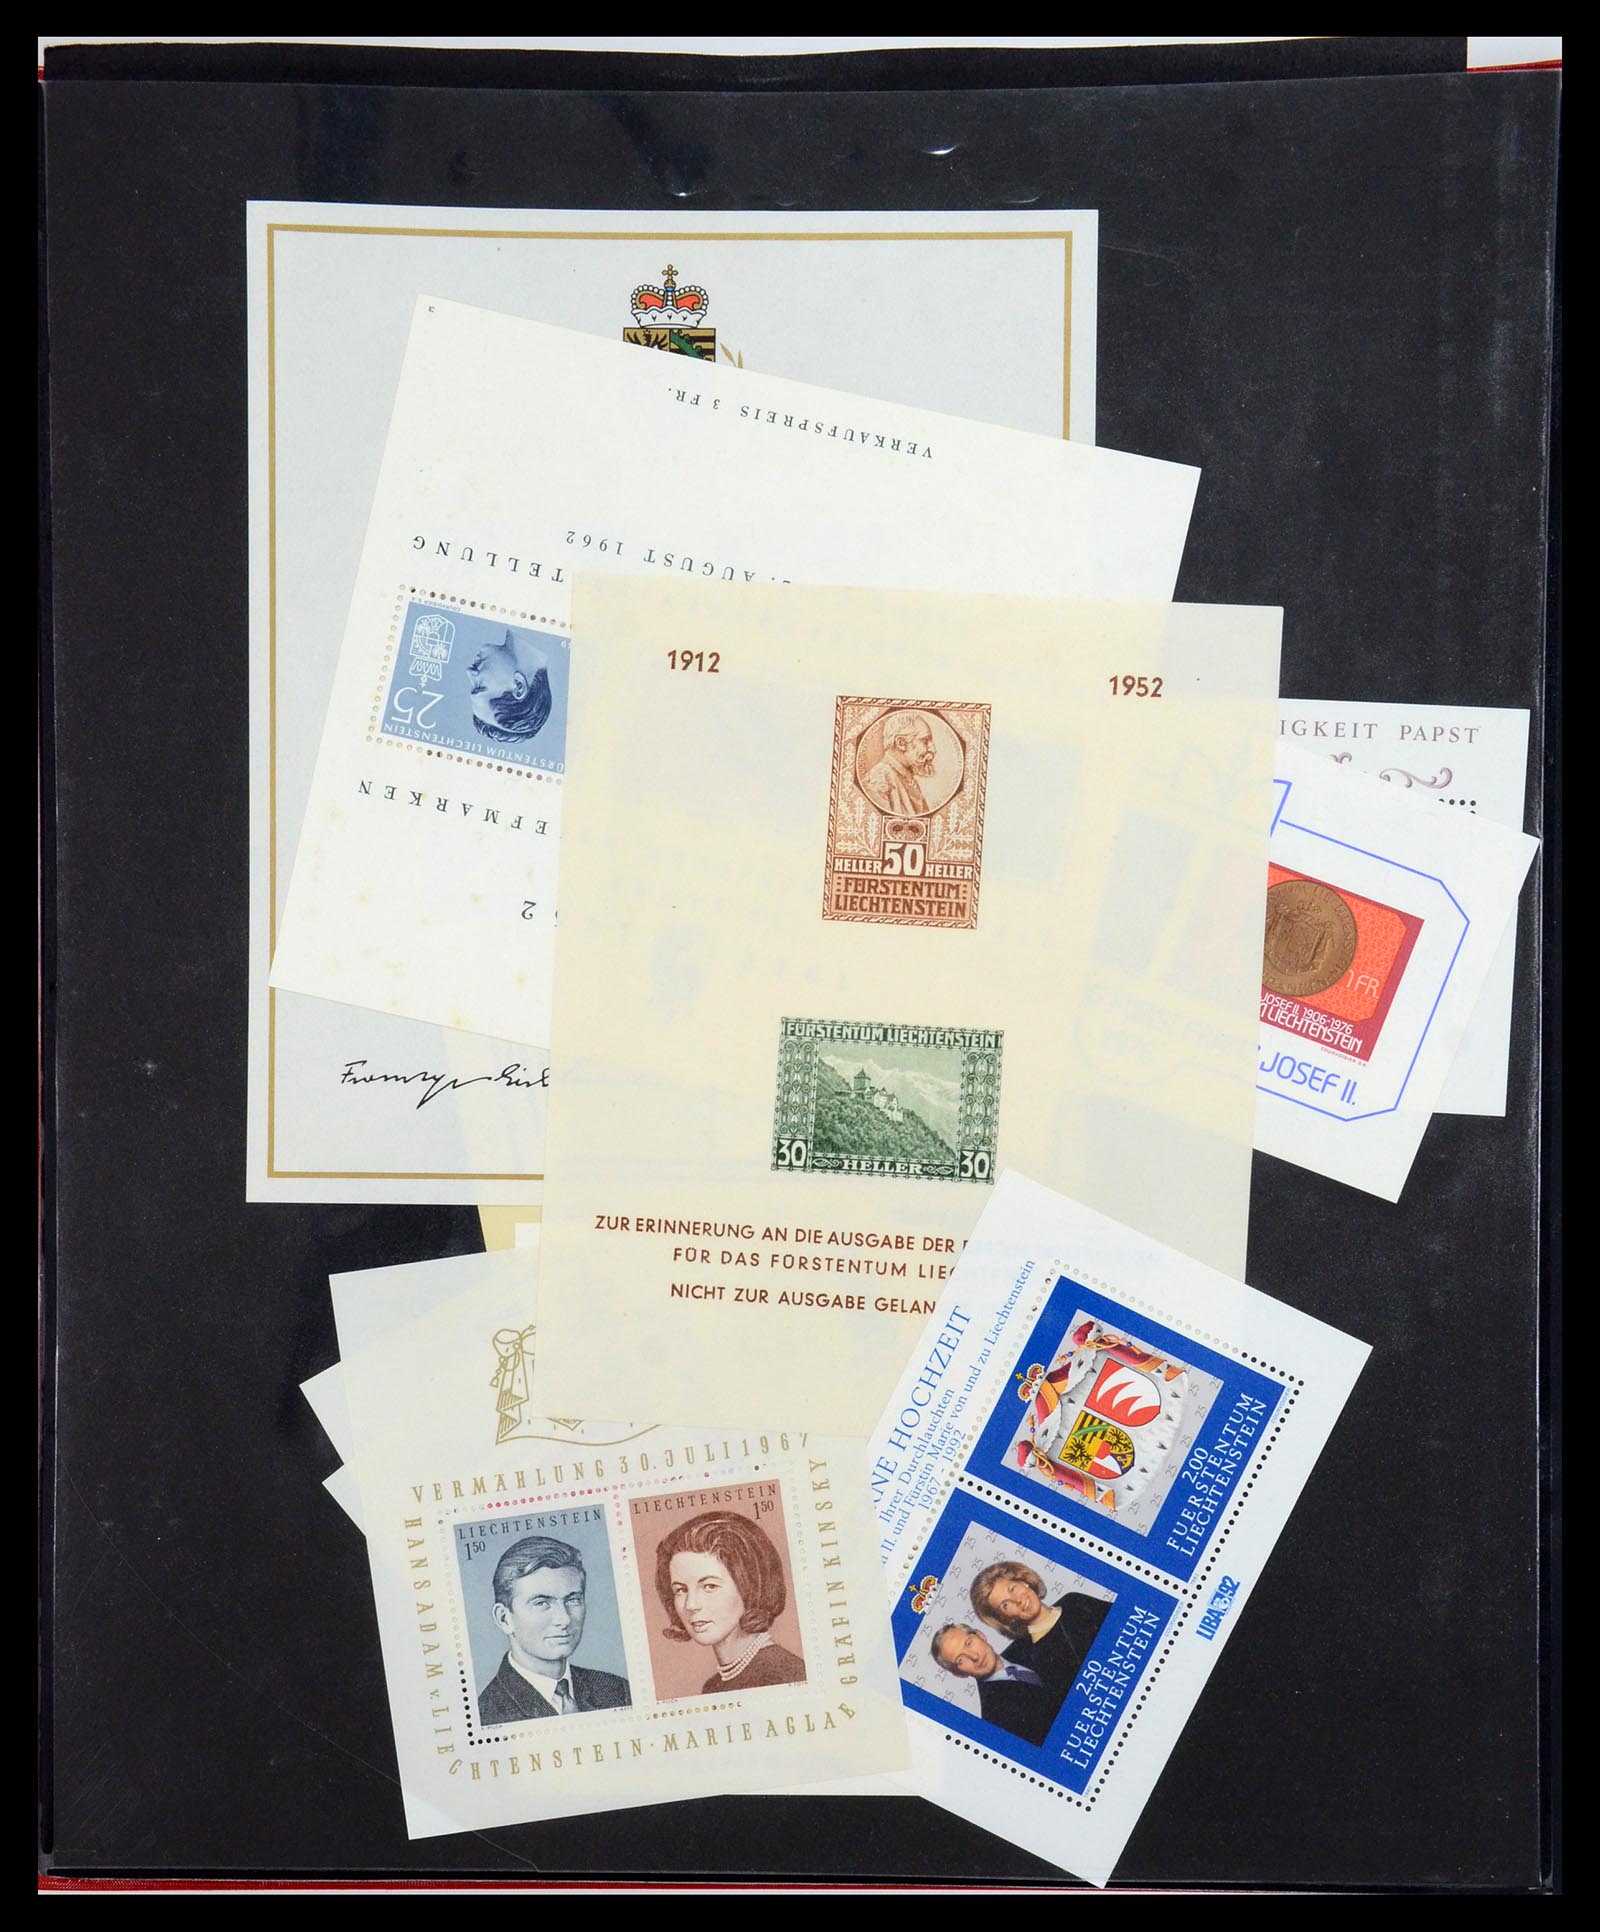 36280 048 - Stamp collection 36280 Liechtenstein souvenir sheets and sheetlets 1934-